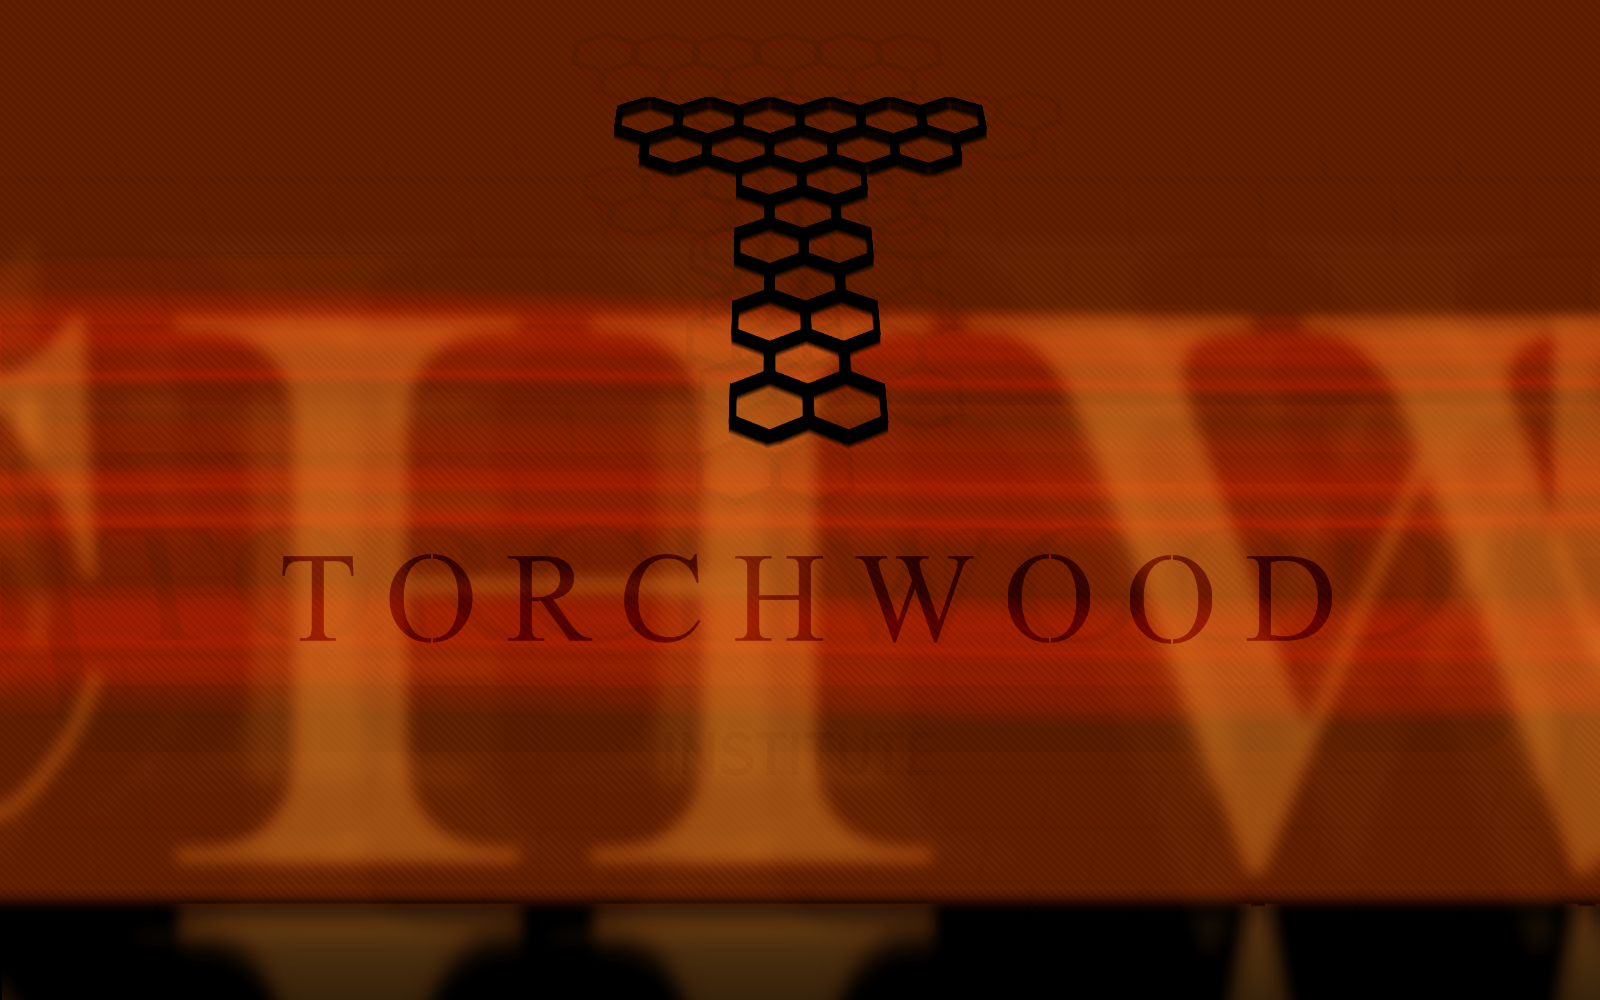 Torchwood Wallpaper Image